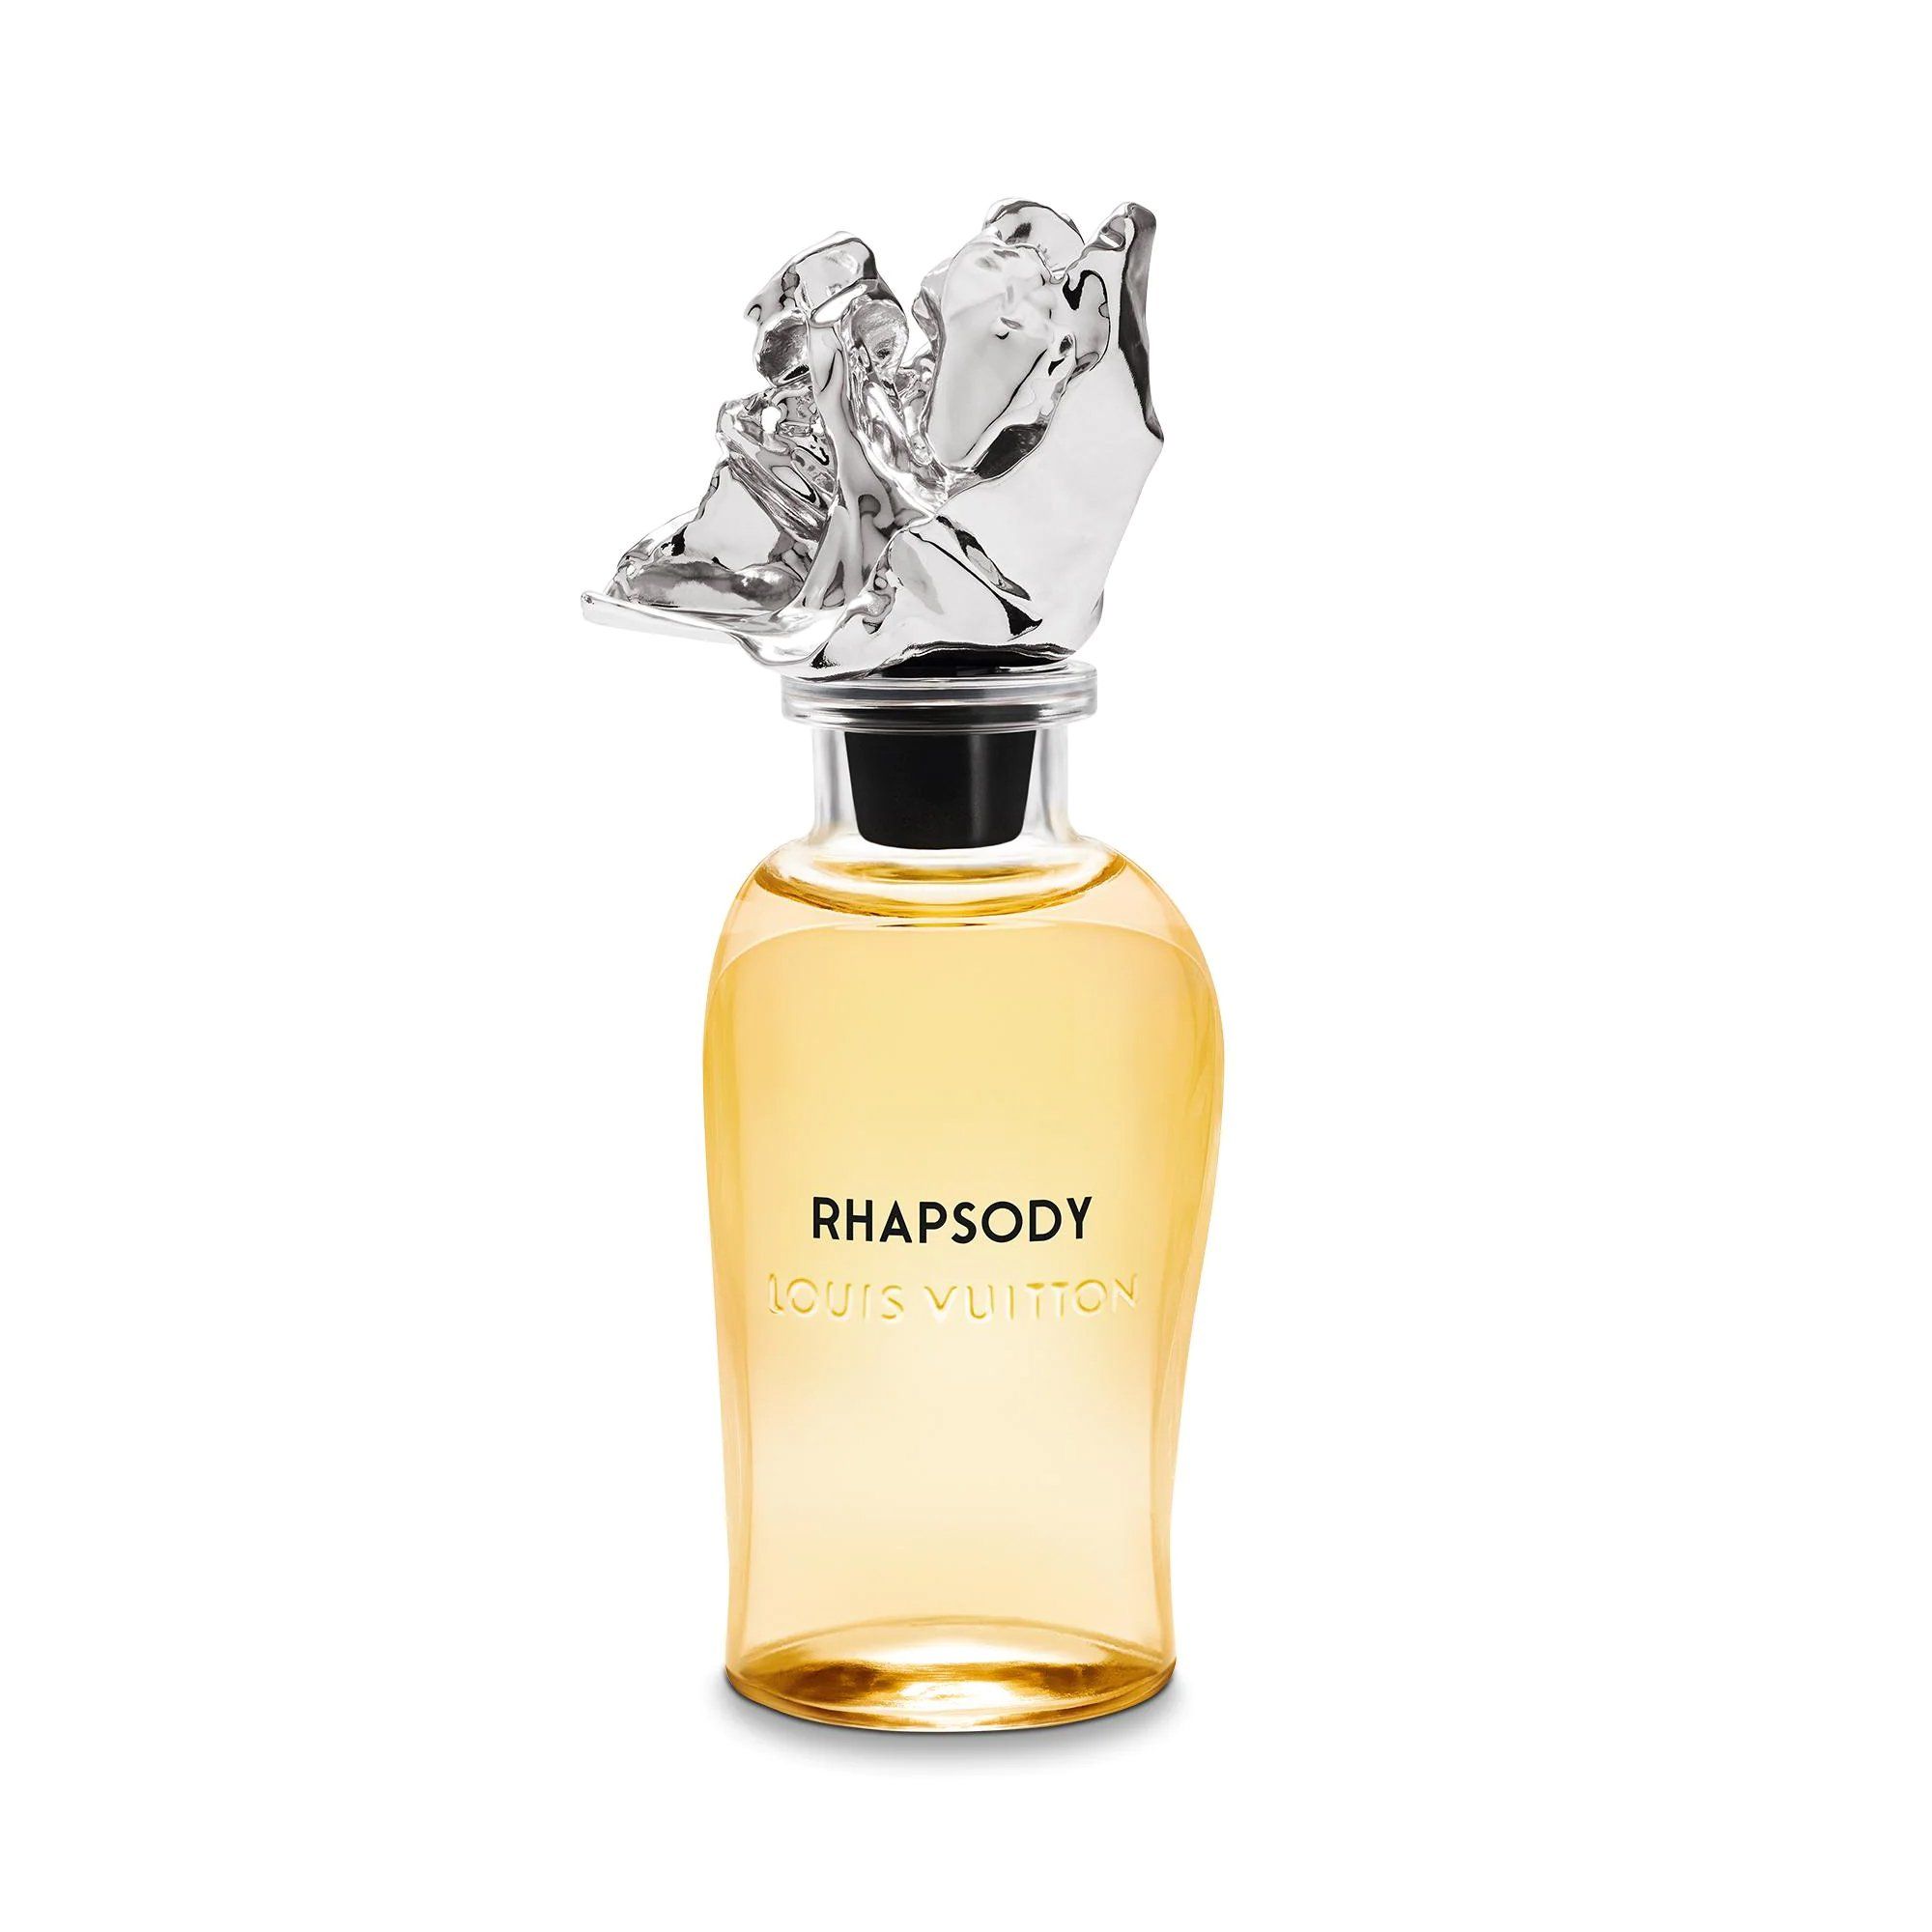 Louis Vuitton Les Extraits Rhapsody |  - Nước hoa cao cấp,  chính hãng giá tốt, mẫu mới